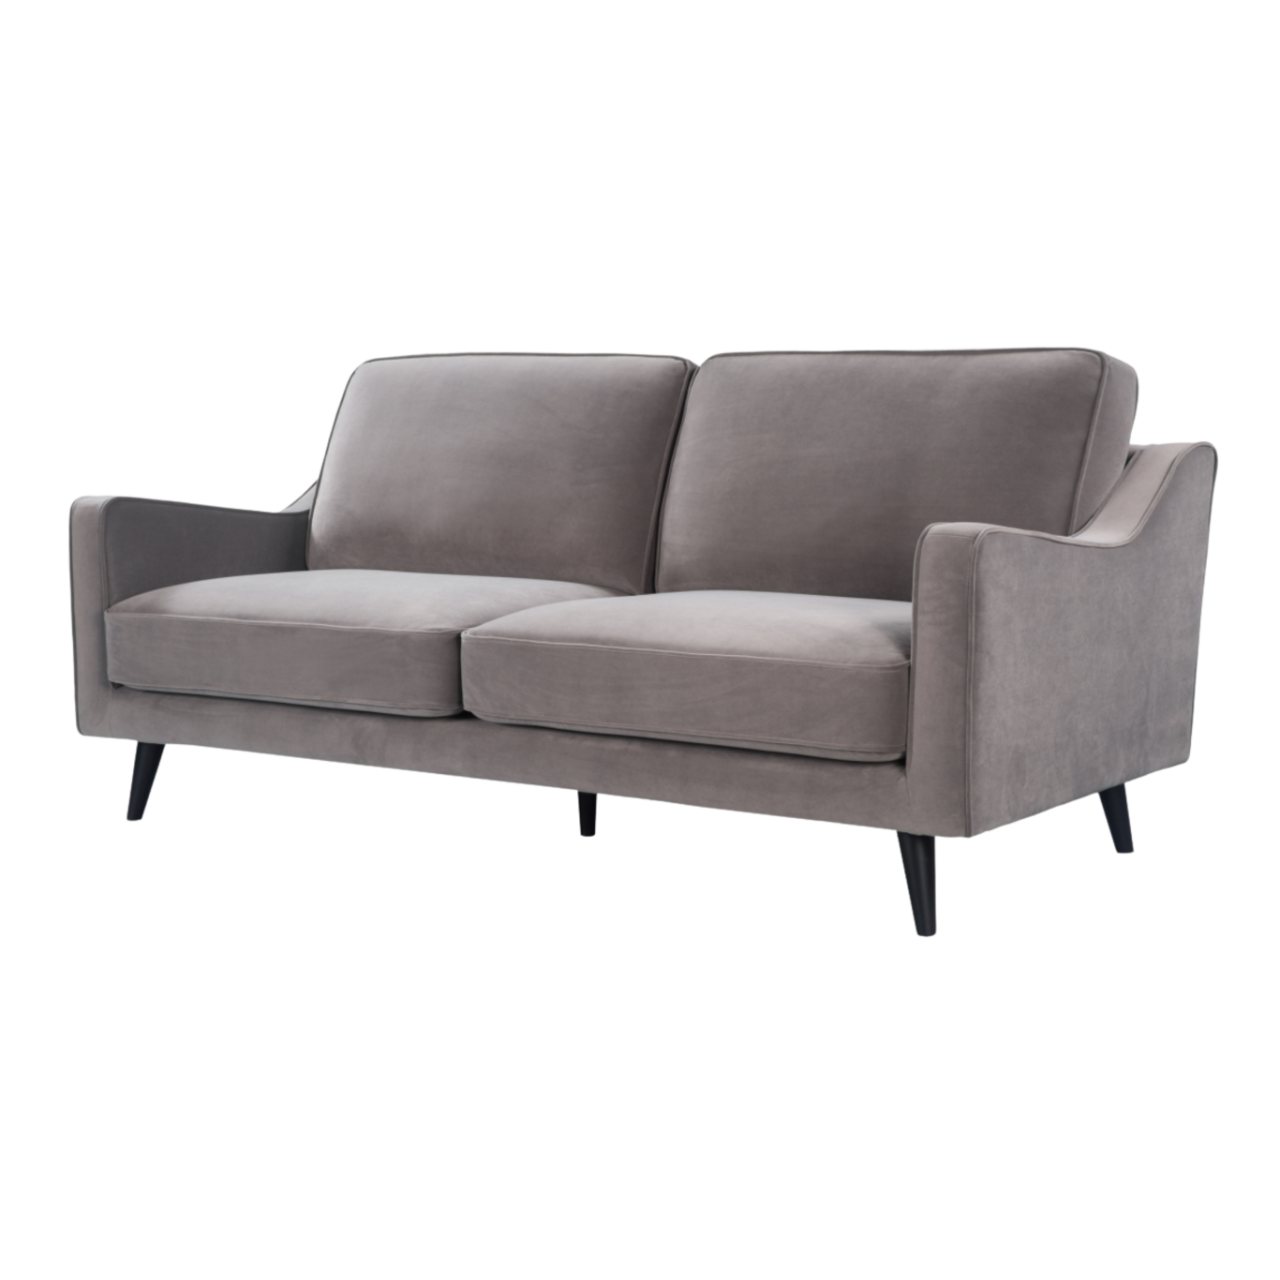 detail of simple, modern 2.5 seater sofa upholstered  in stone grey velvet